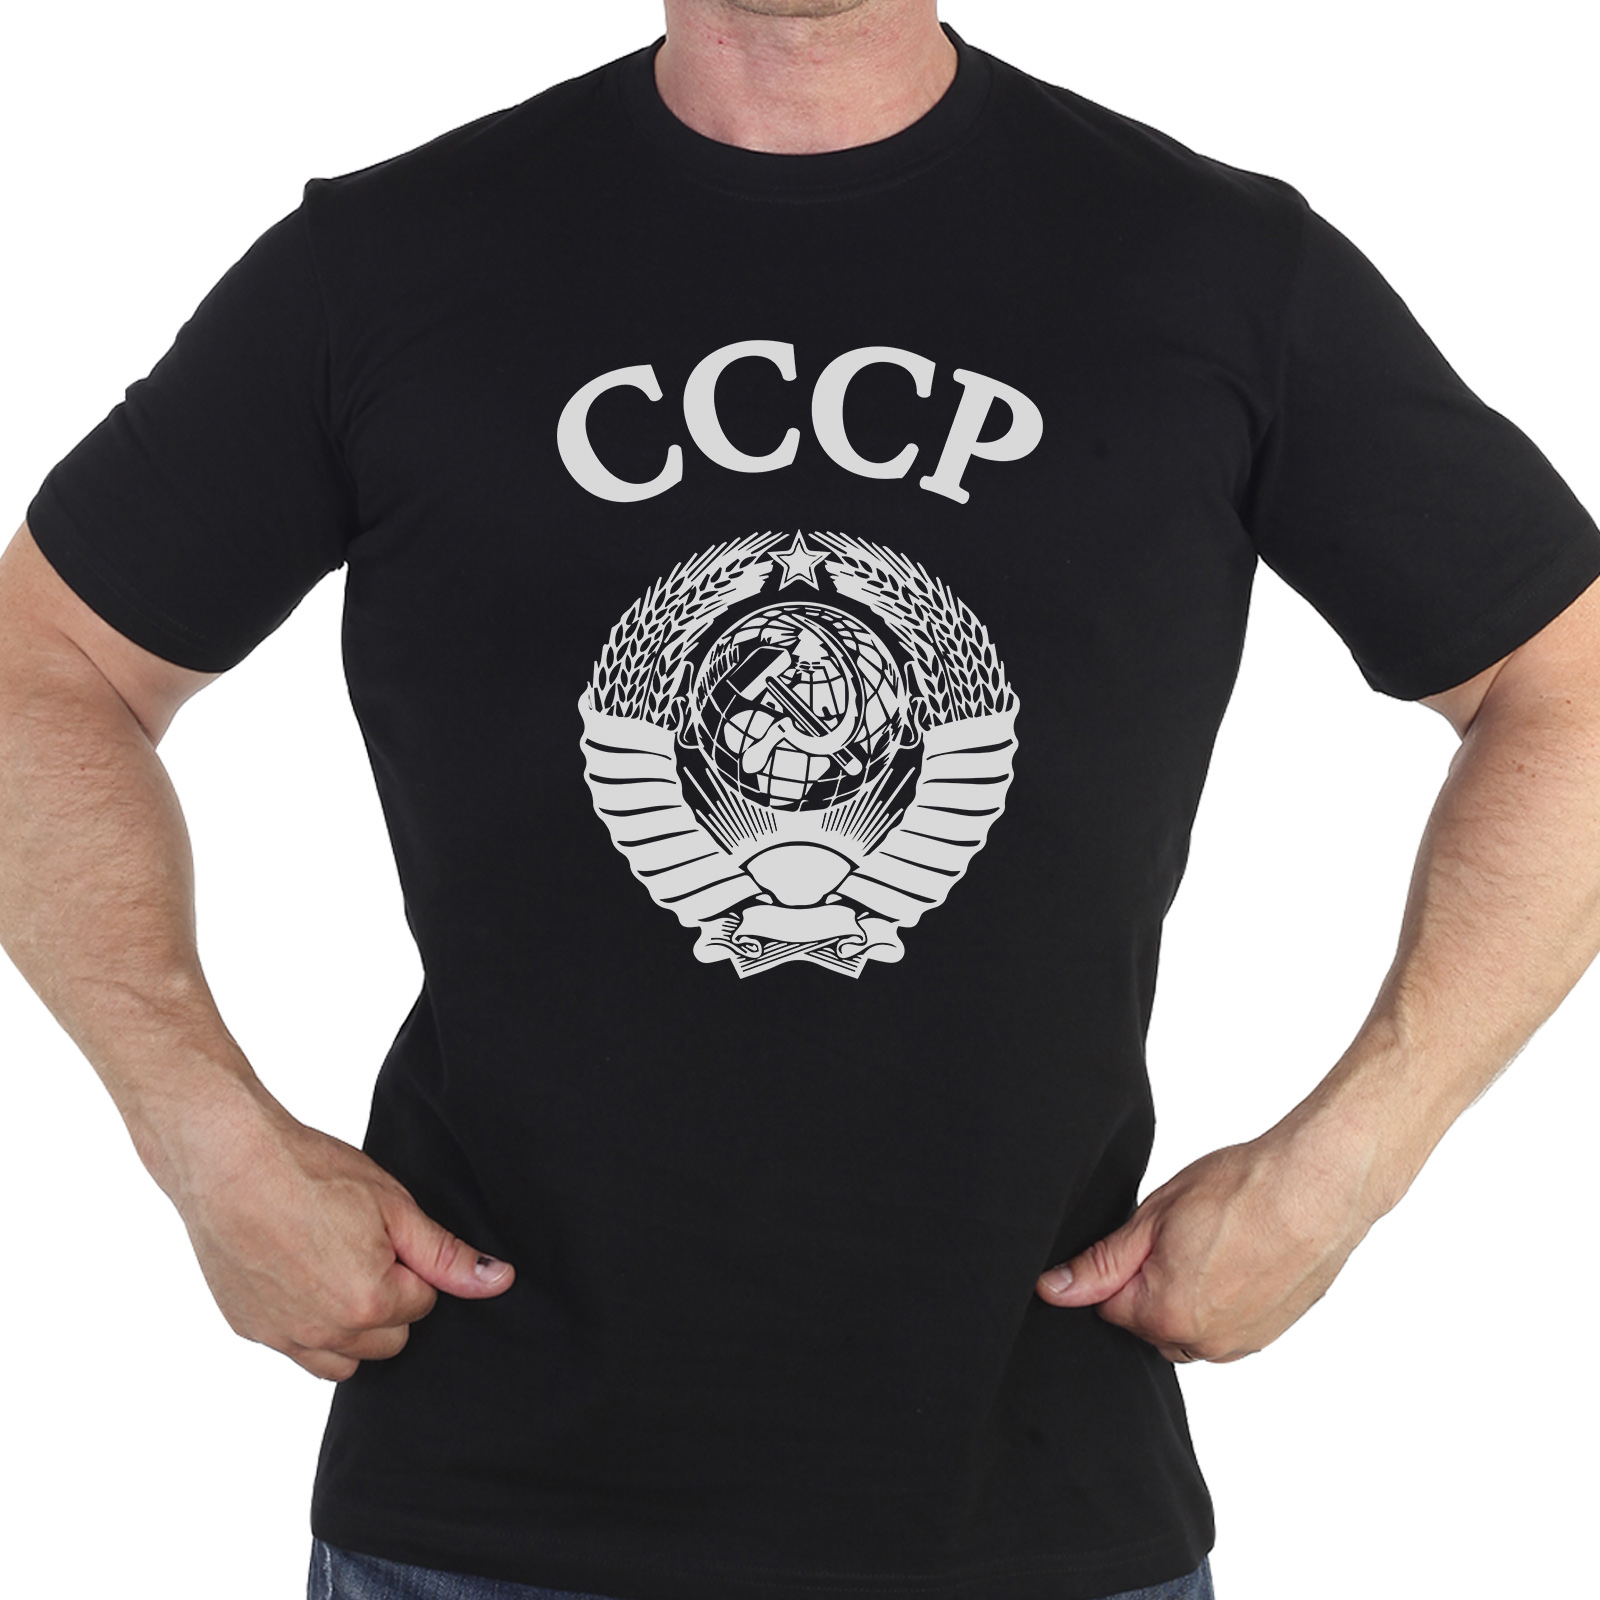 Купить в интернет магазине футболку с гербом СССР